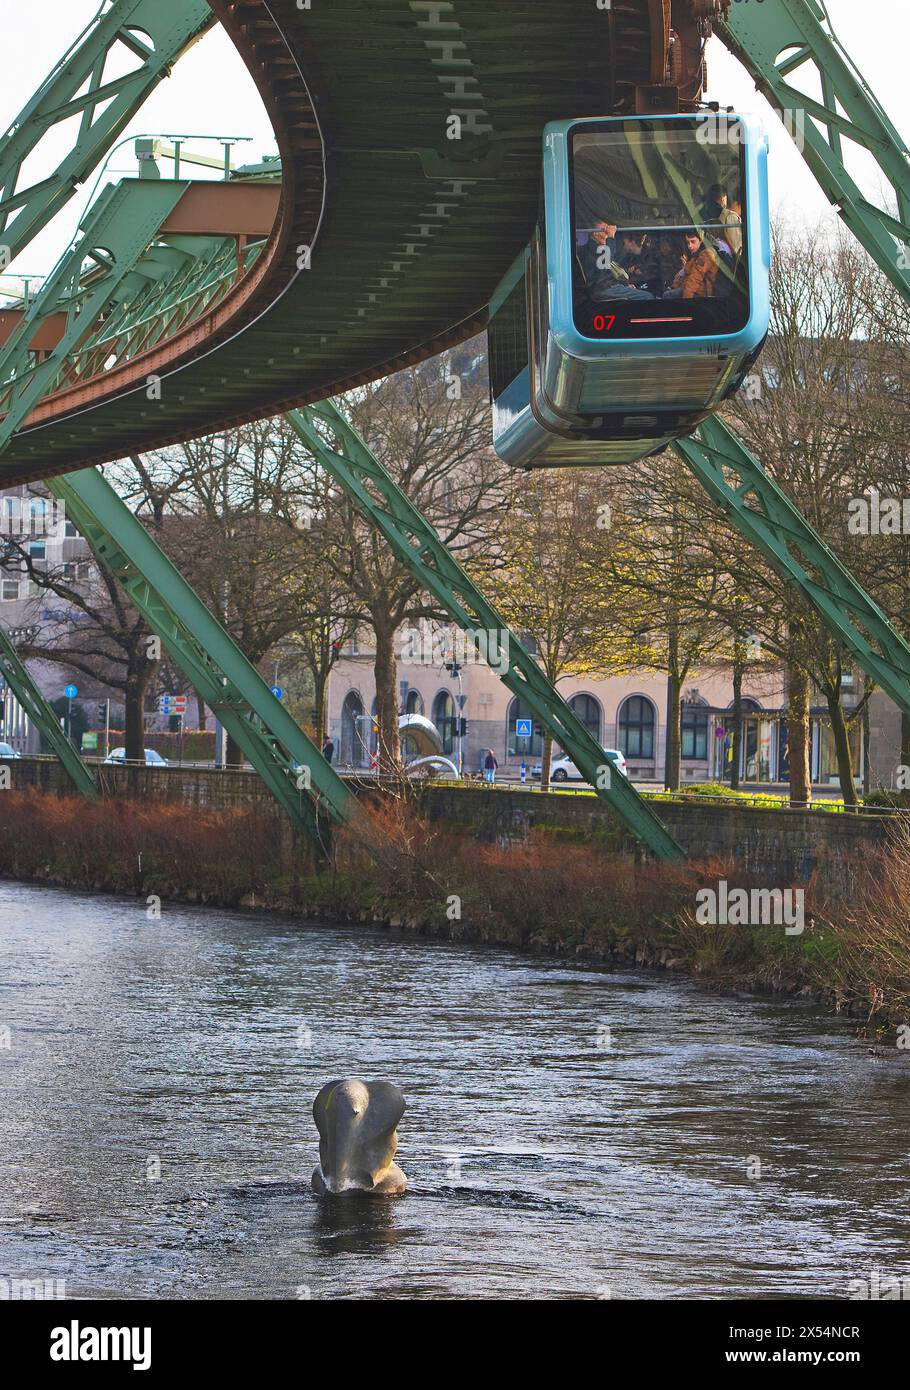 Wuppertaler Schwebebahn sur la Wupper avec une sculpture dans l'eau, rappelant le saut de l'éléphant Tuffi, Allemagne, Rhénanie du Nord-Westphalie, Banque D'Images